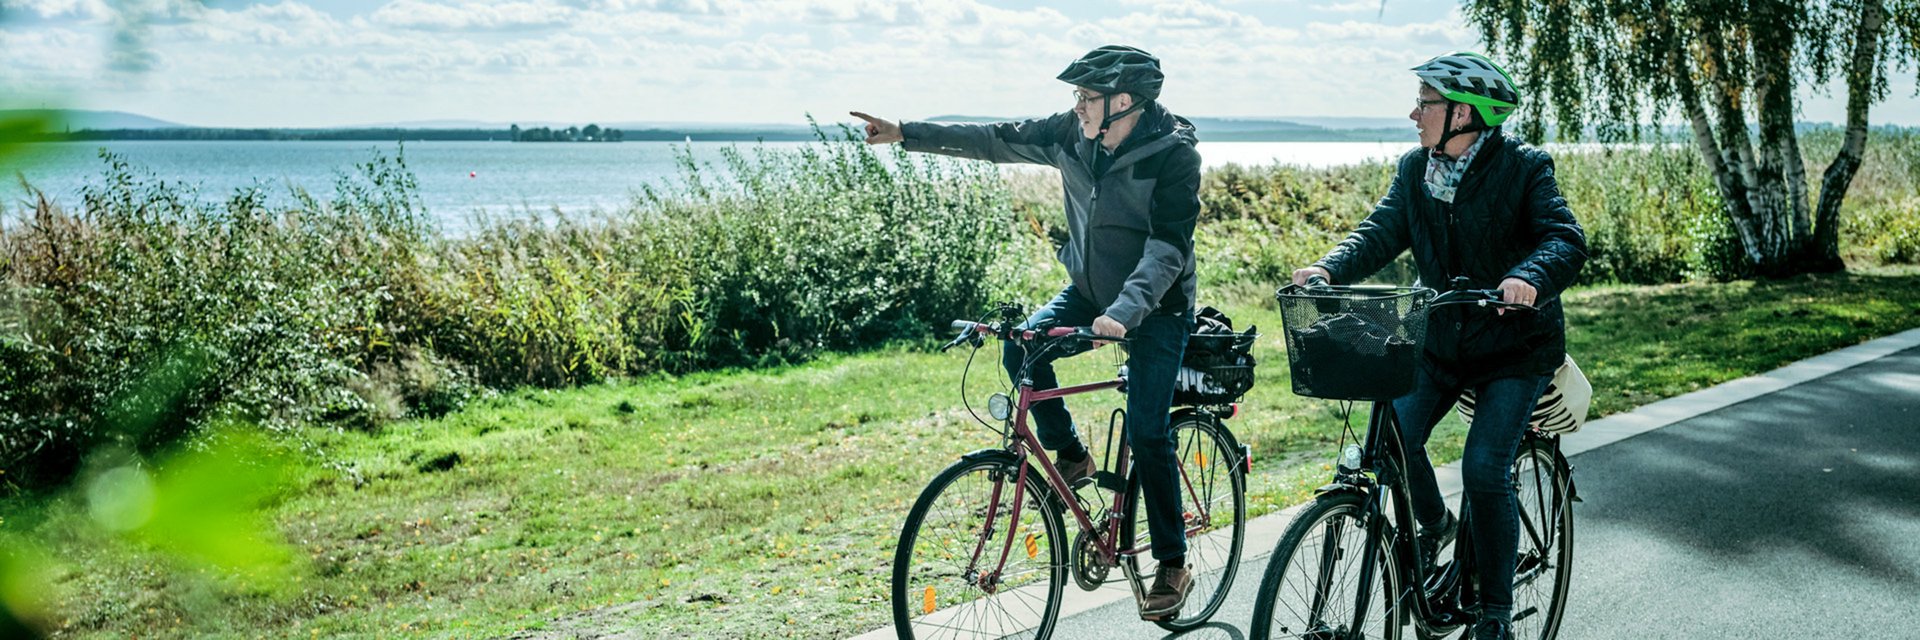 Zwei Fahrradfahrer fahren auf einem Radweg entlang des Steihuder Meers.